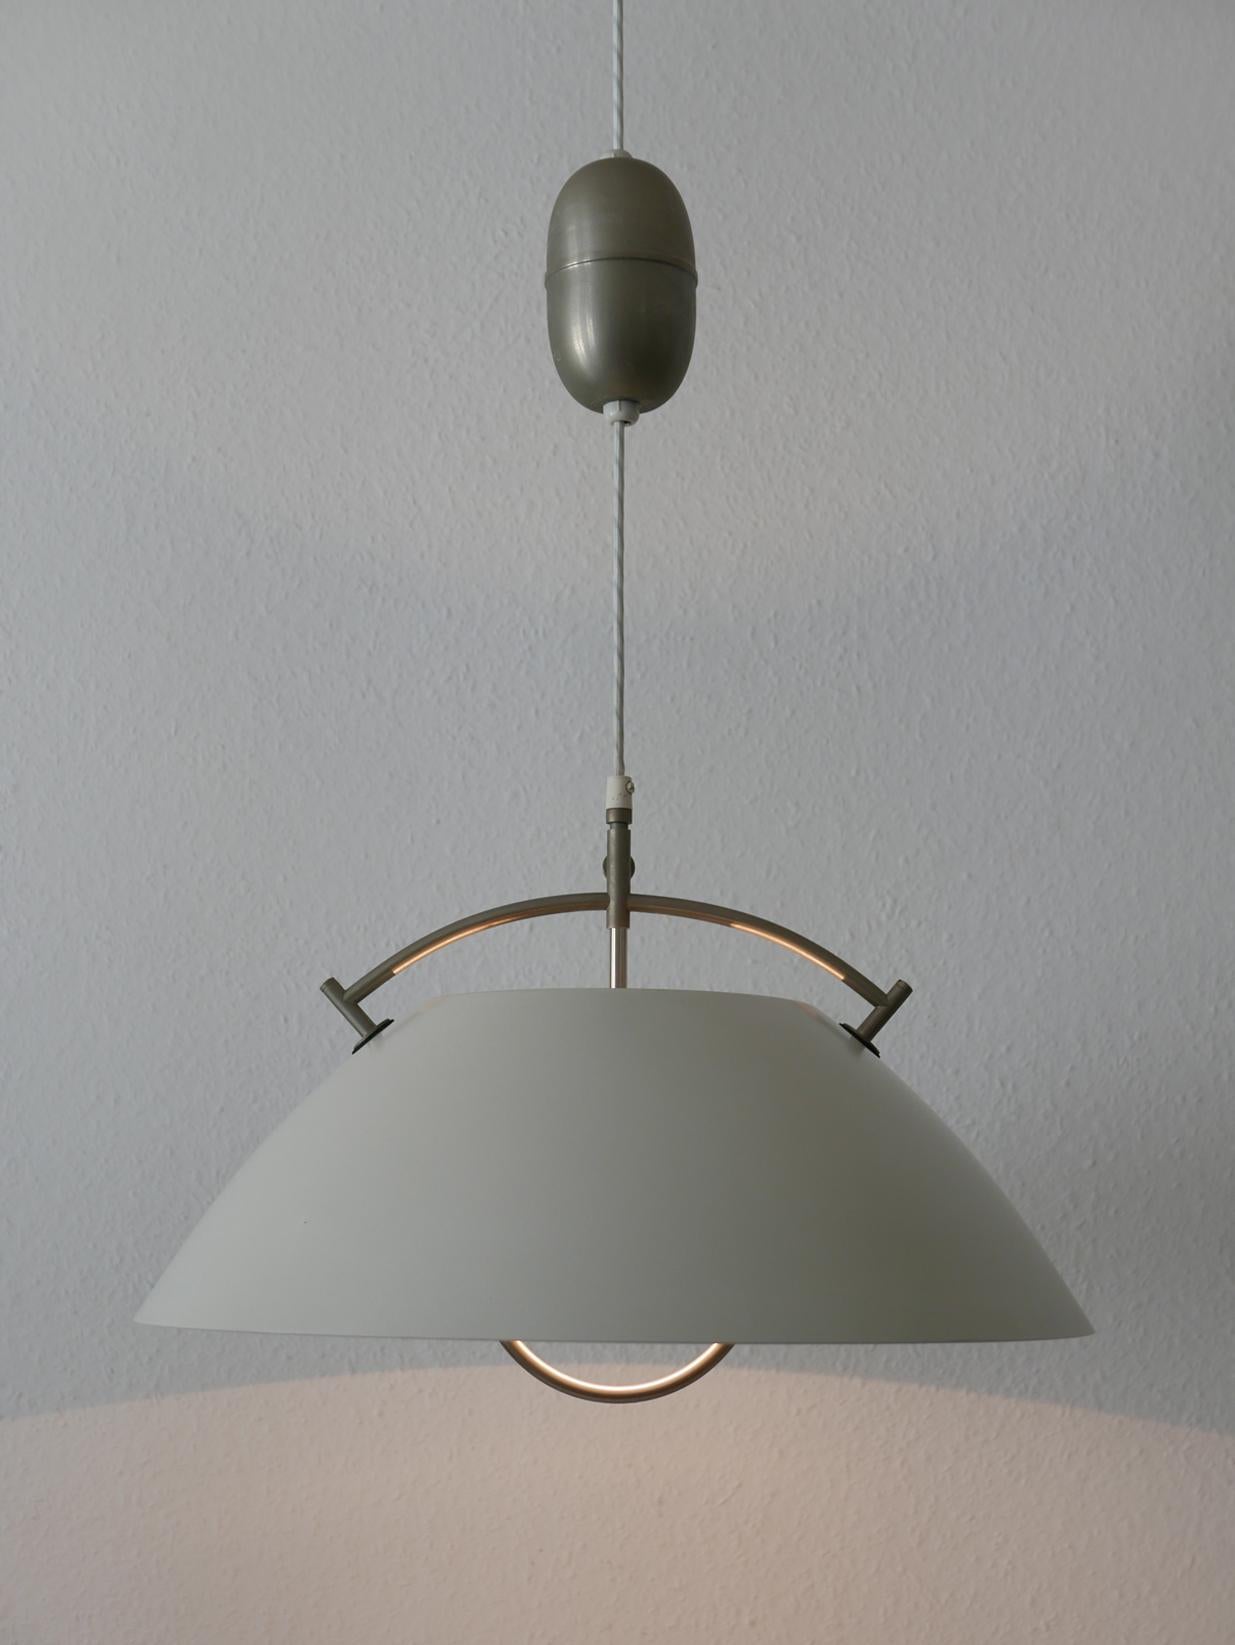 Rare lampe suspendue JH 604 avec poulie, d'origine, datant du milieu du siècle dernier. Conçu par Hans Wegner, 1962. Fabriqué par Louis Poulsen, années 1960, Danemark. Marqué de la marque du fabricant.

Au total, trois lampes identiques avec poulie